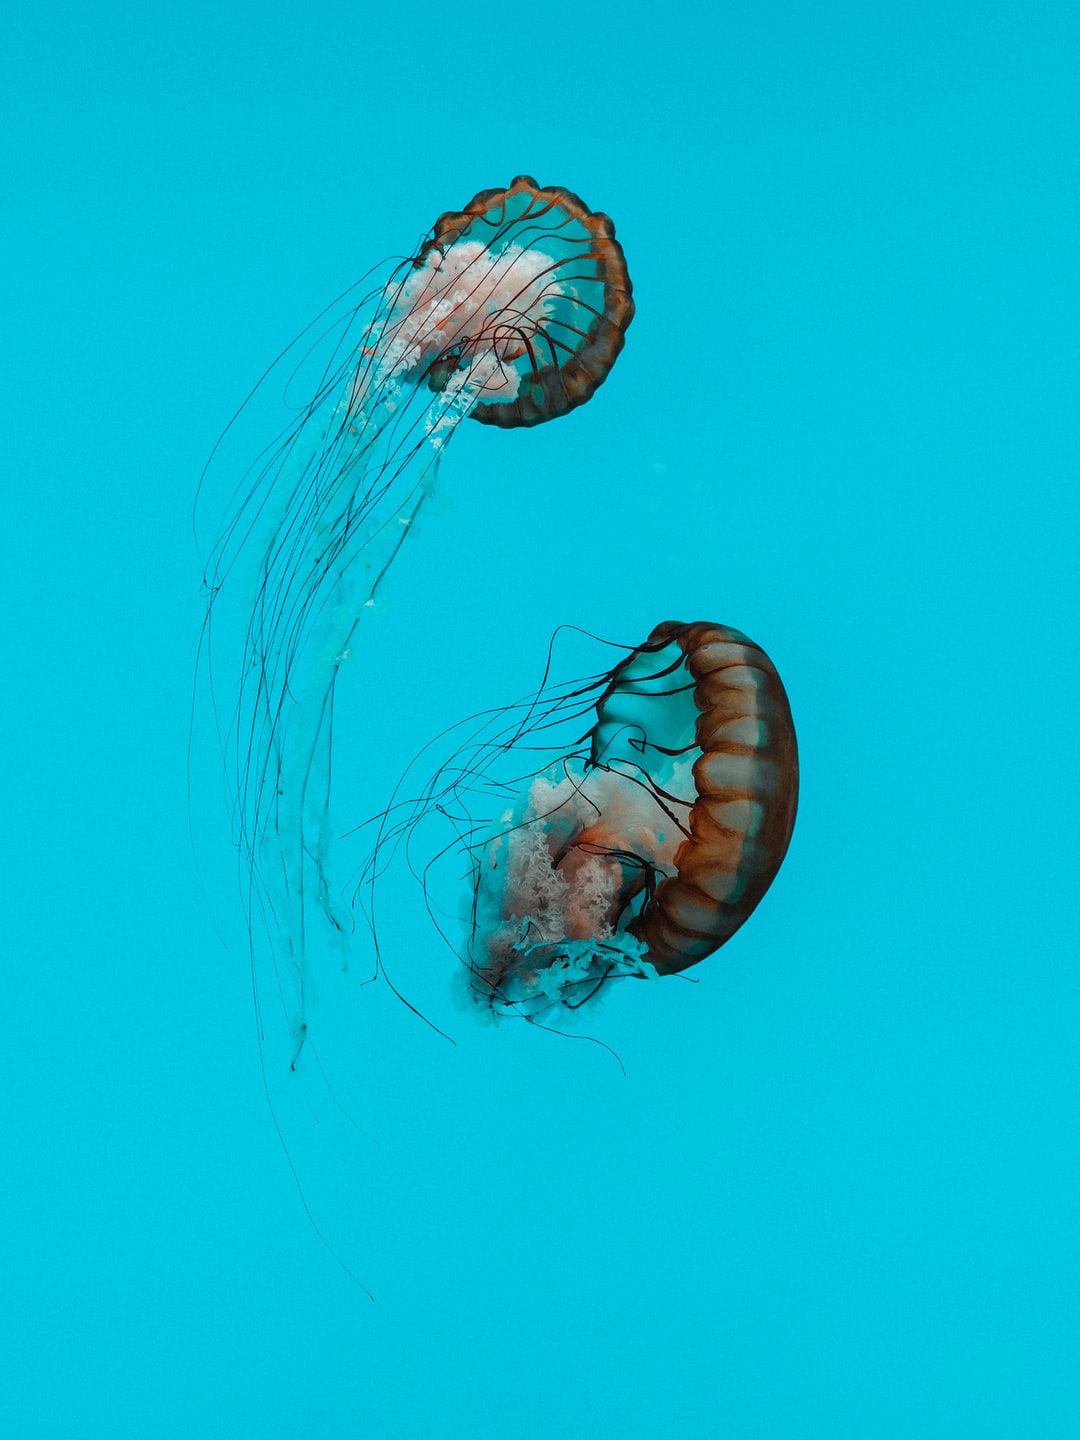 22 wichtige Fragen zu Wie Kommen Fadenwürmer Ins Aquarium?